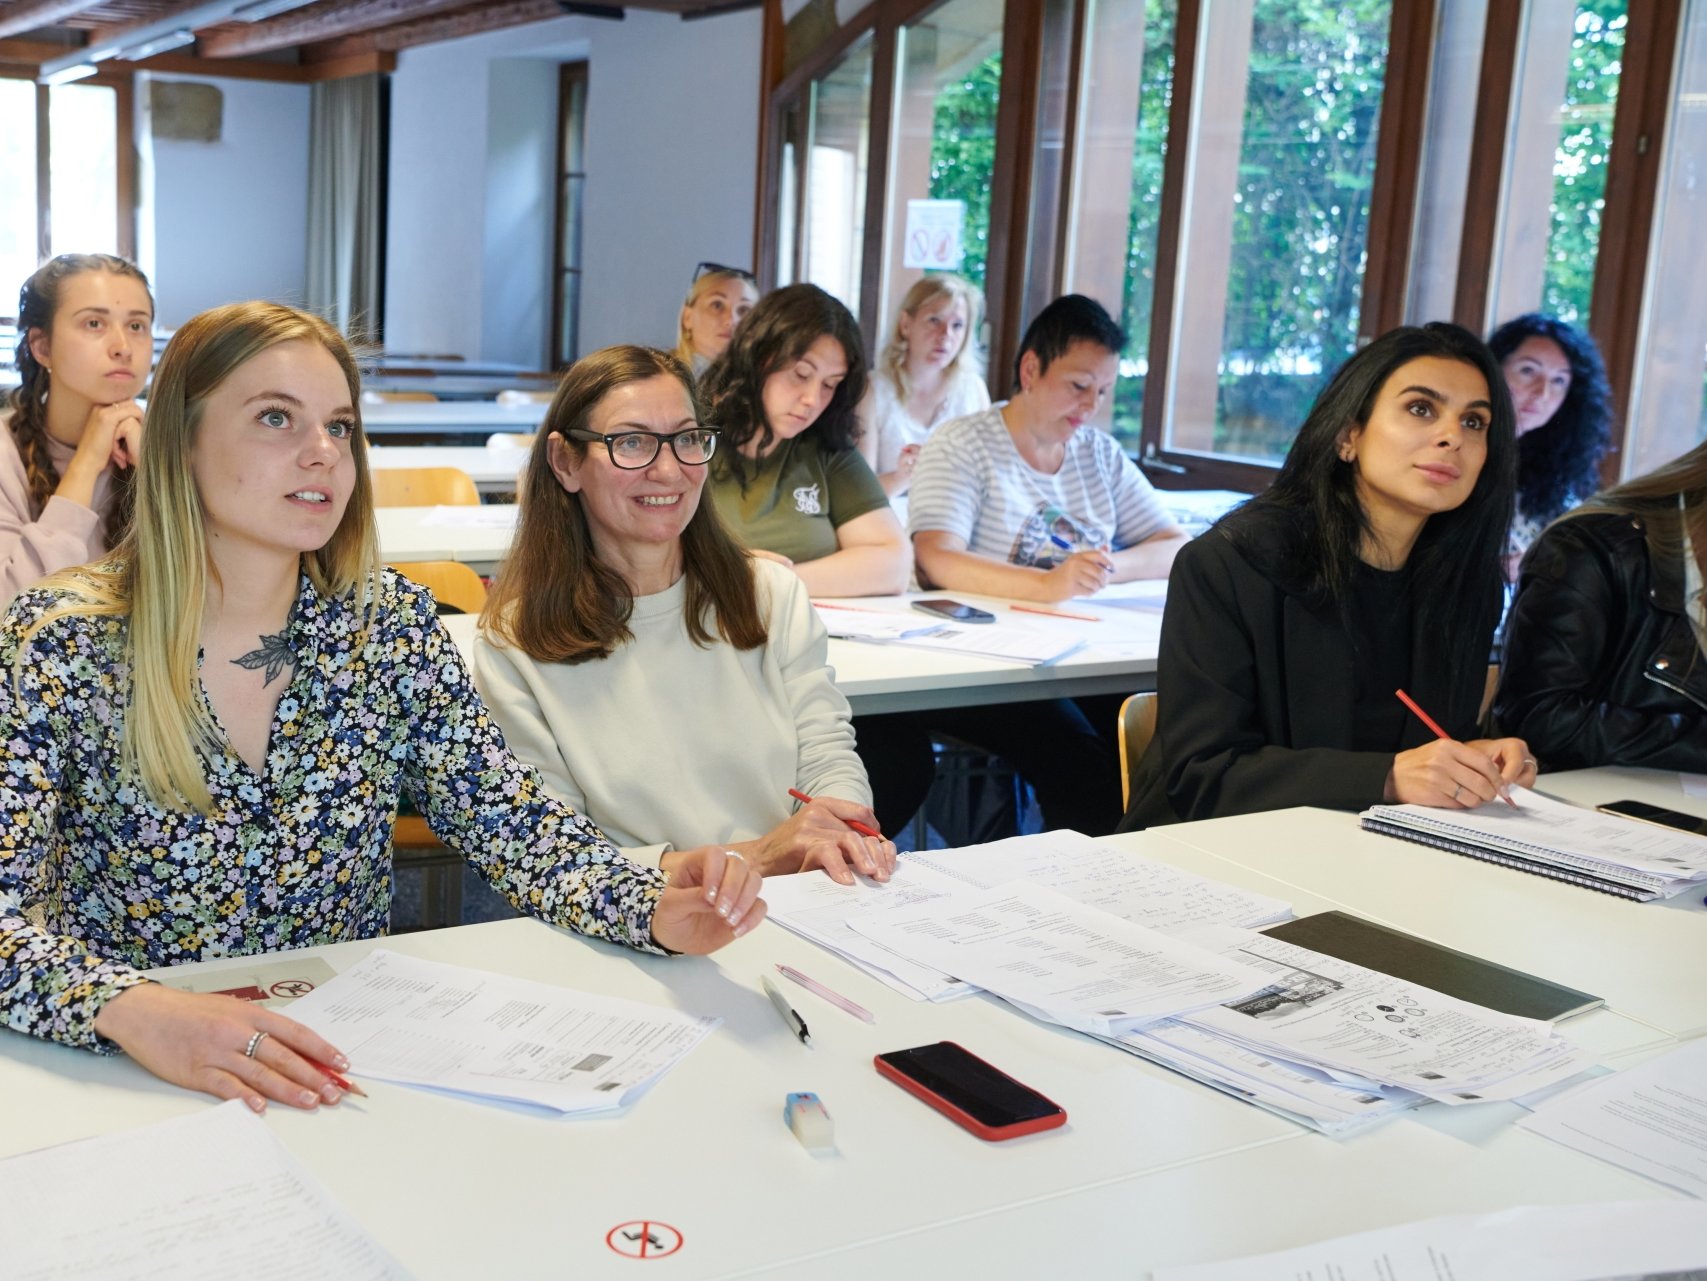 Les cours sont donnés dans les locaux de l'Institut de langue et civilisation françaises de l'Université, situés au faubourg de l'Hôpital, à Neuchâtel.